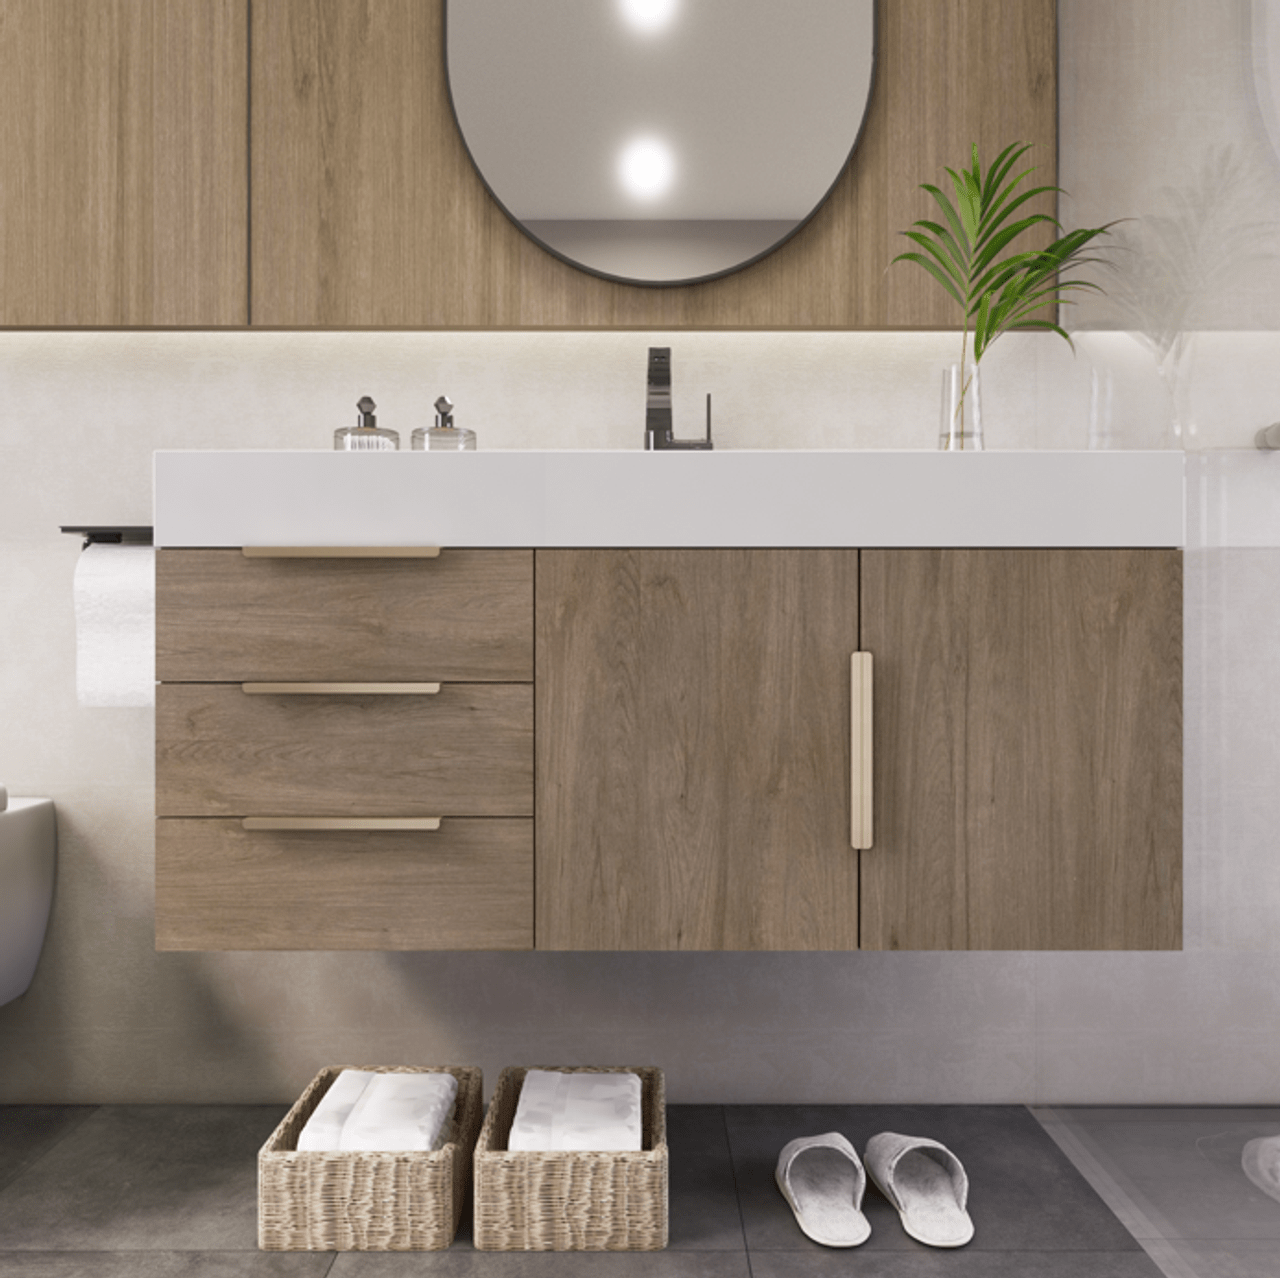 Noble 42" Wall Mount Luxury Bathroom Vanity with Acrylic Sink